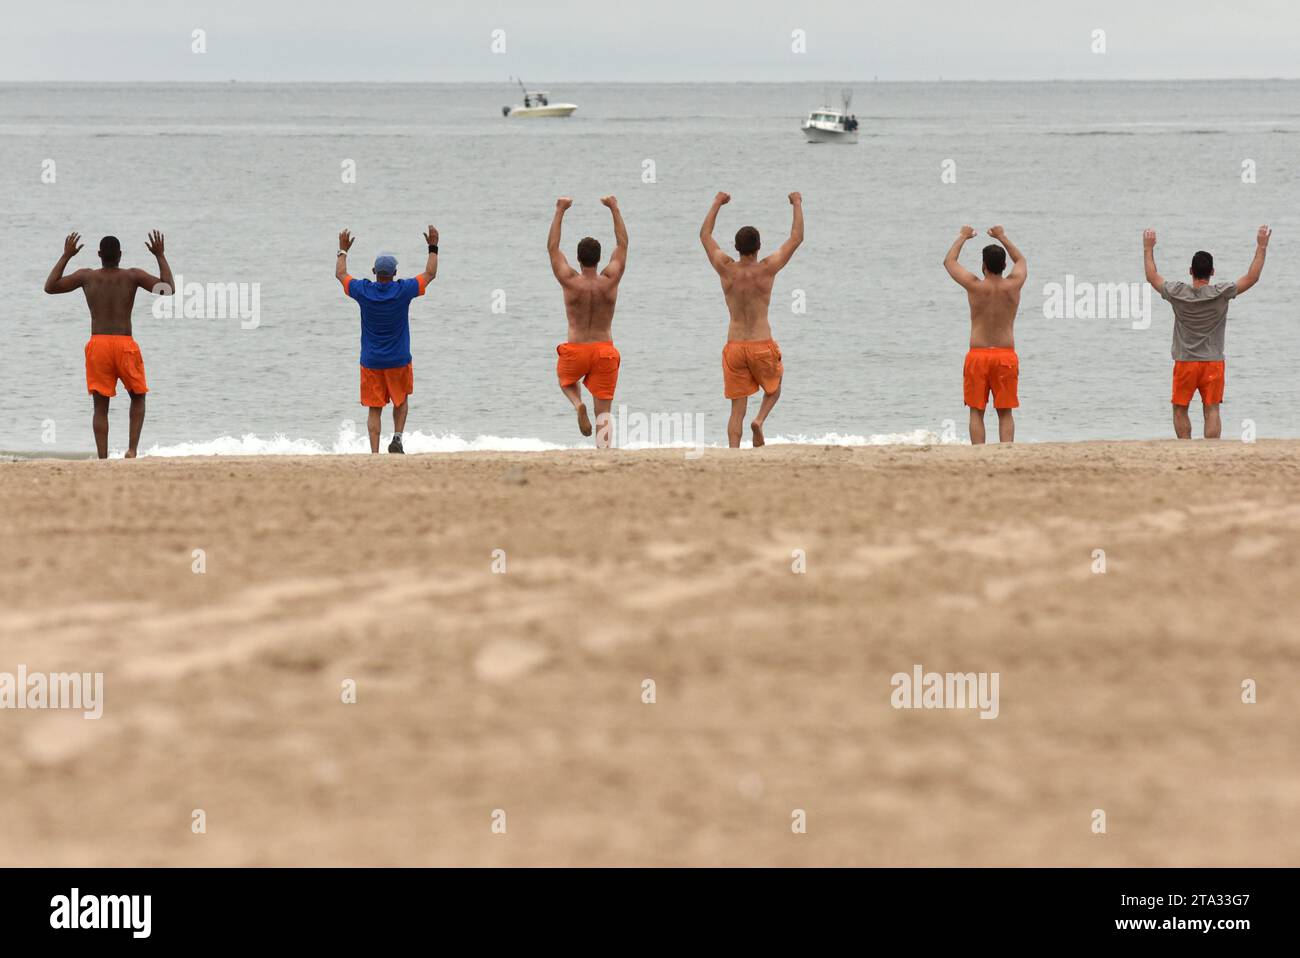 New York, USA - 28 maggio 2018: Allenamento con bagnino sulla spiaggia di Coney Island a New York, USA Foto Stock